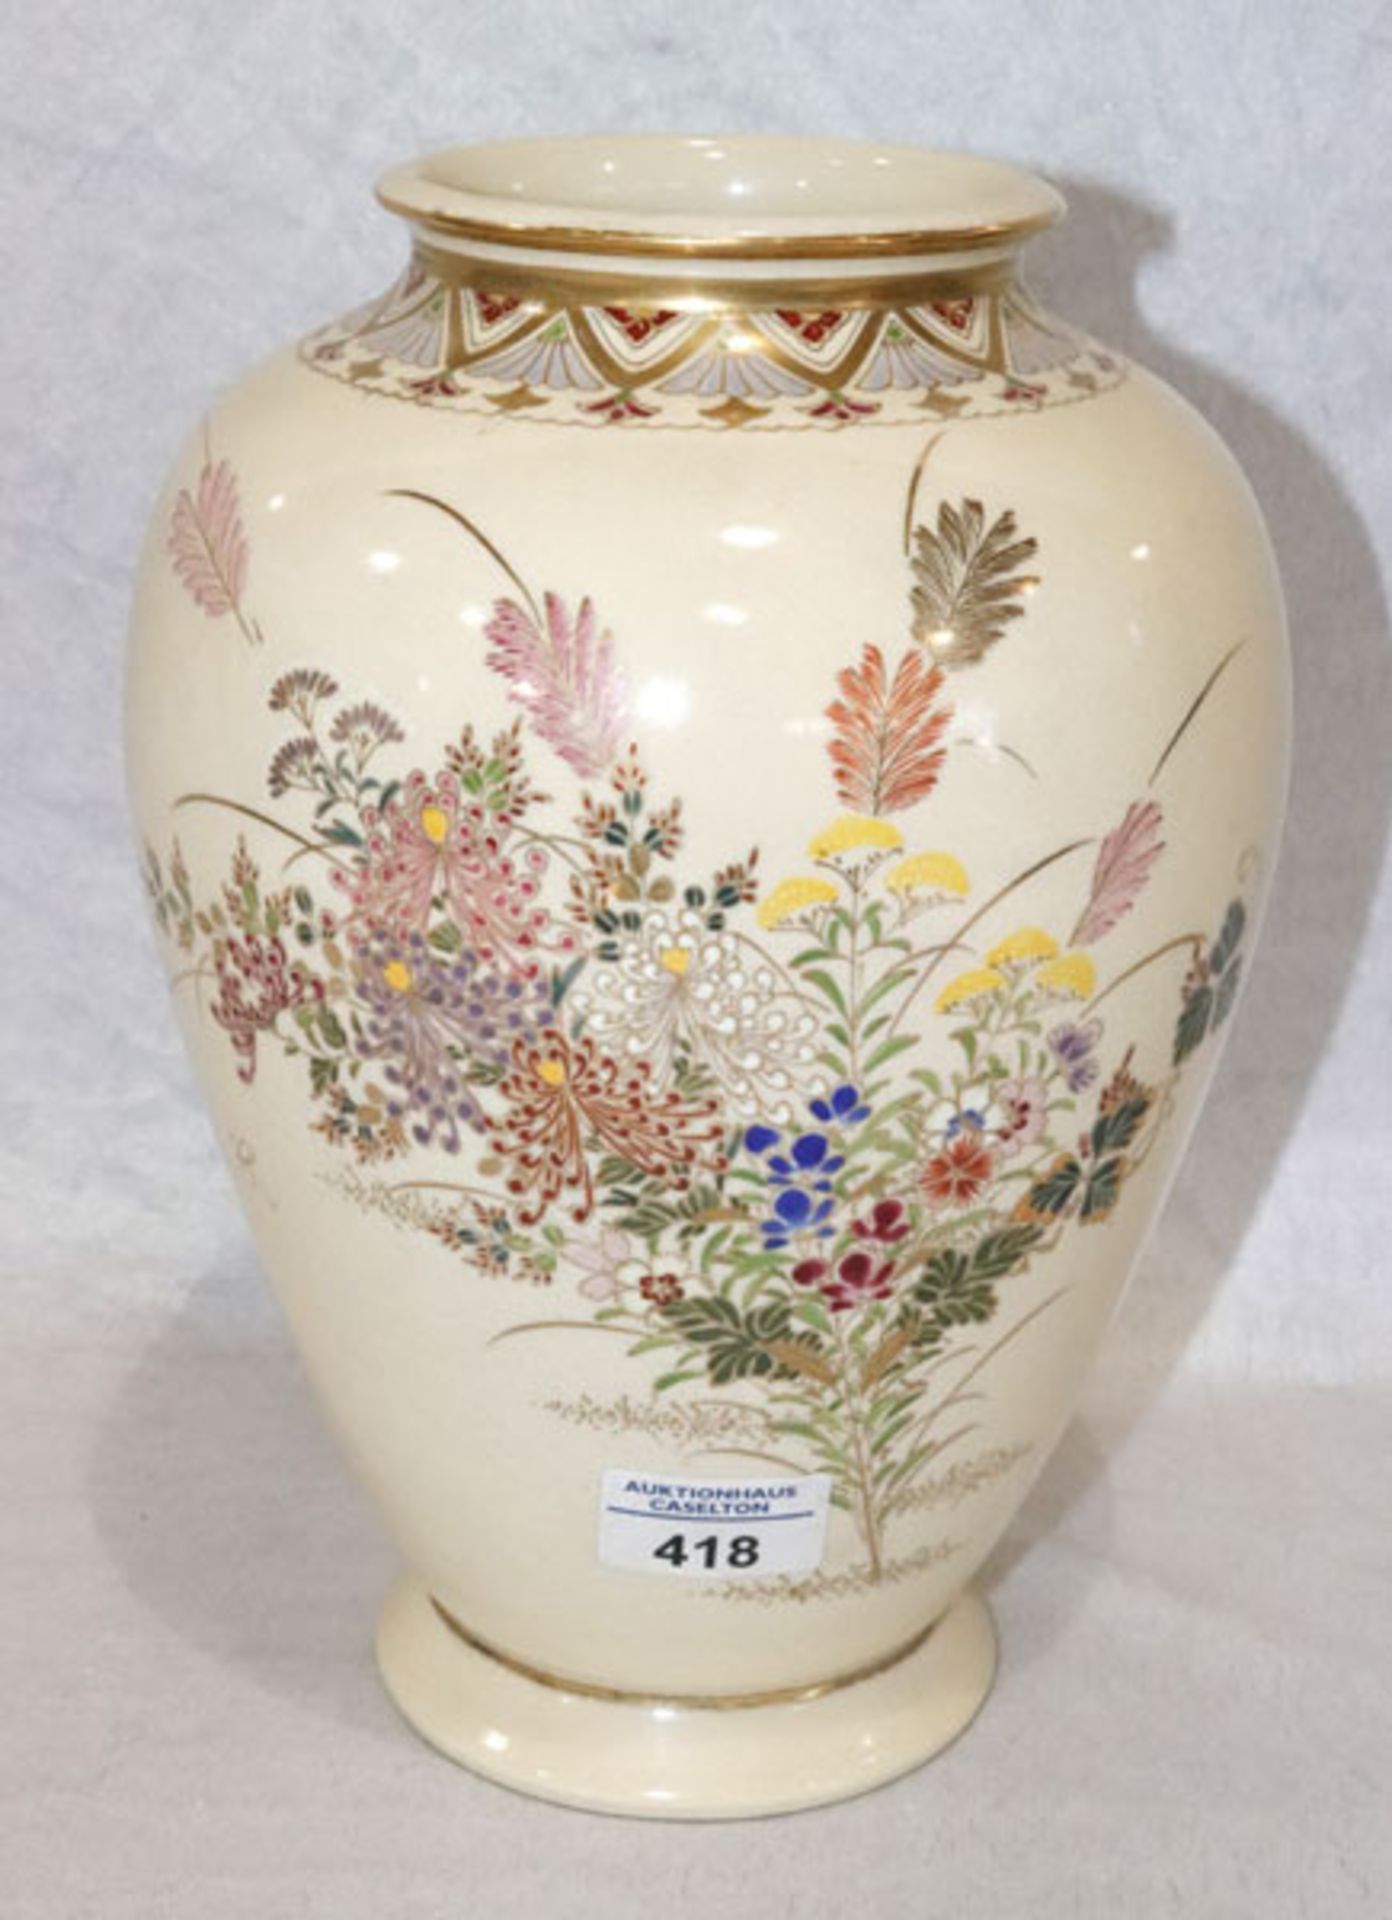 Asiatische Blumenvase, elfenbeinfarben mit buntem Blumendekor und Goldrand, am Boden